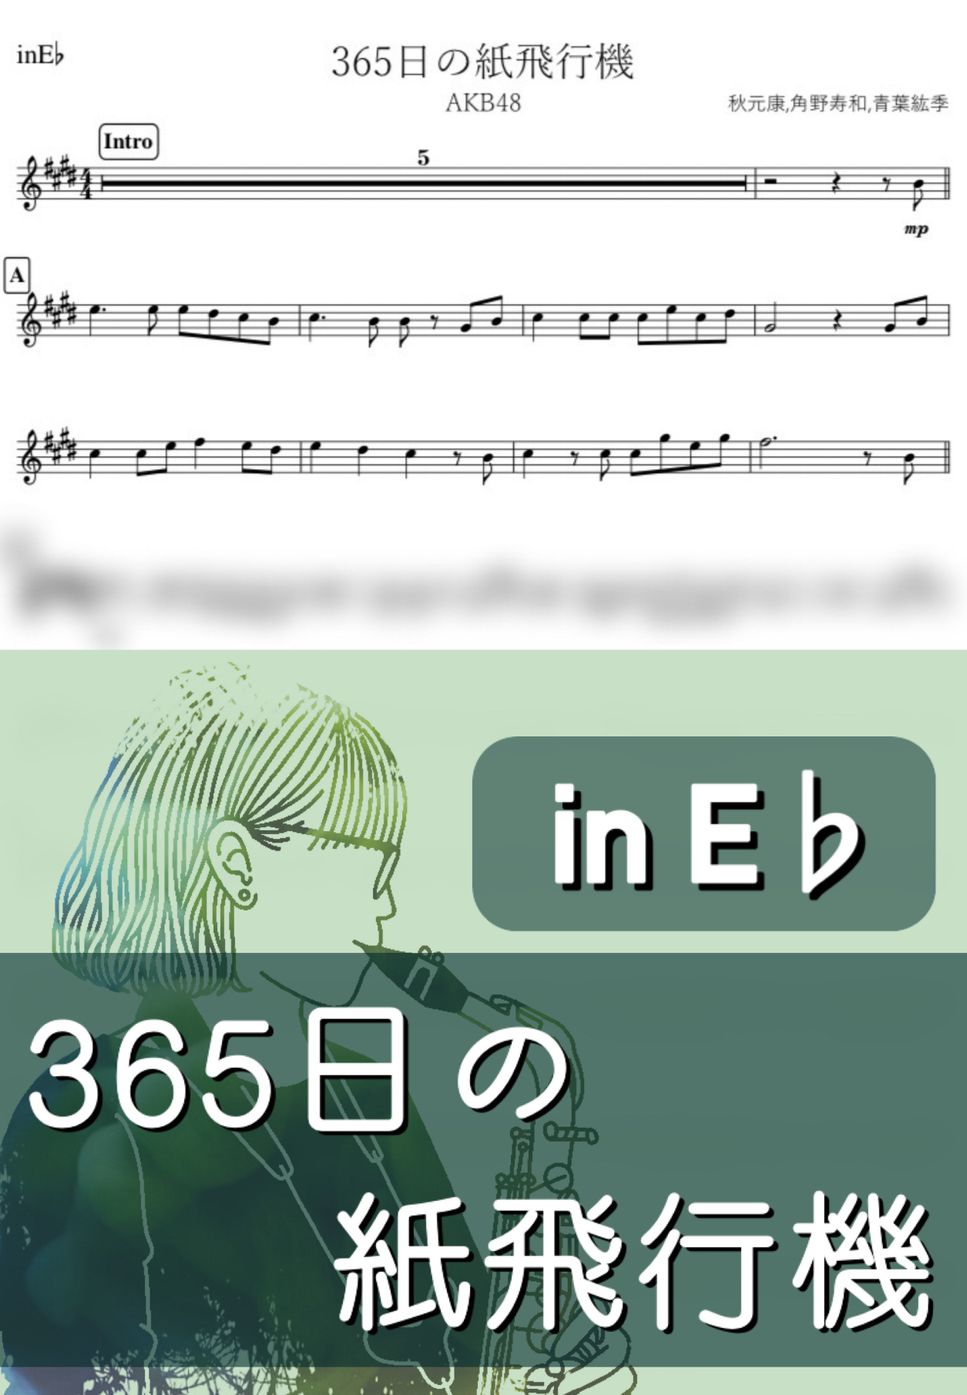 AKB48 - 365日の紙飛行機 (E♭) by kanamusic